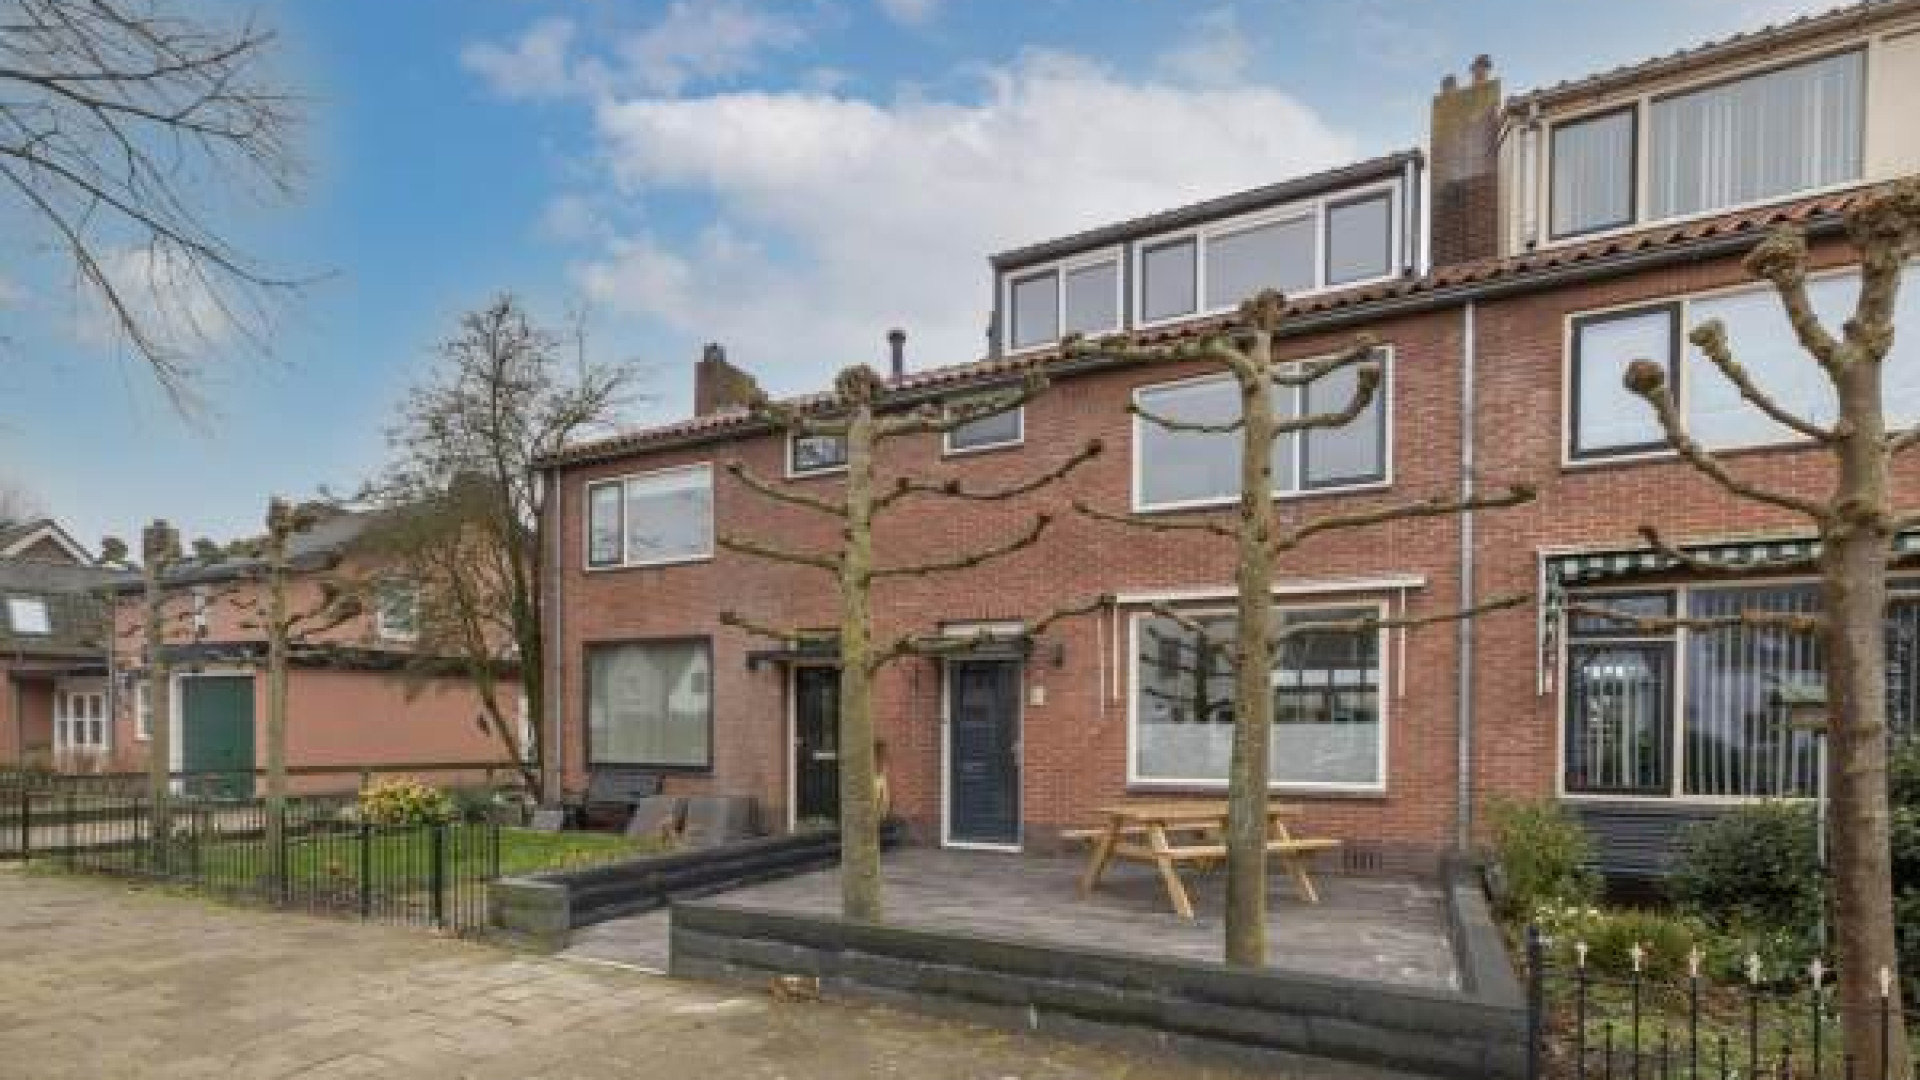 Dit is de knusse woning  van door hartfalen getroffen Chimene van Oosterhout. Zie foto's